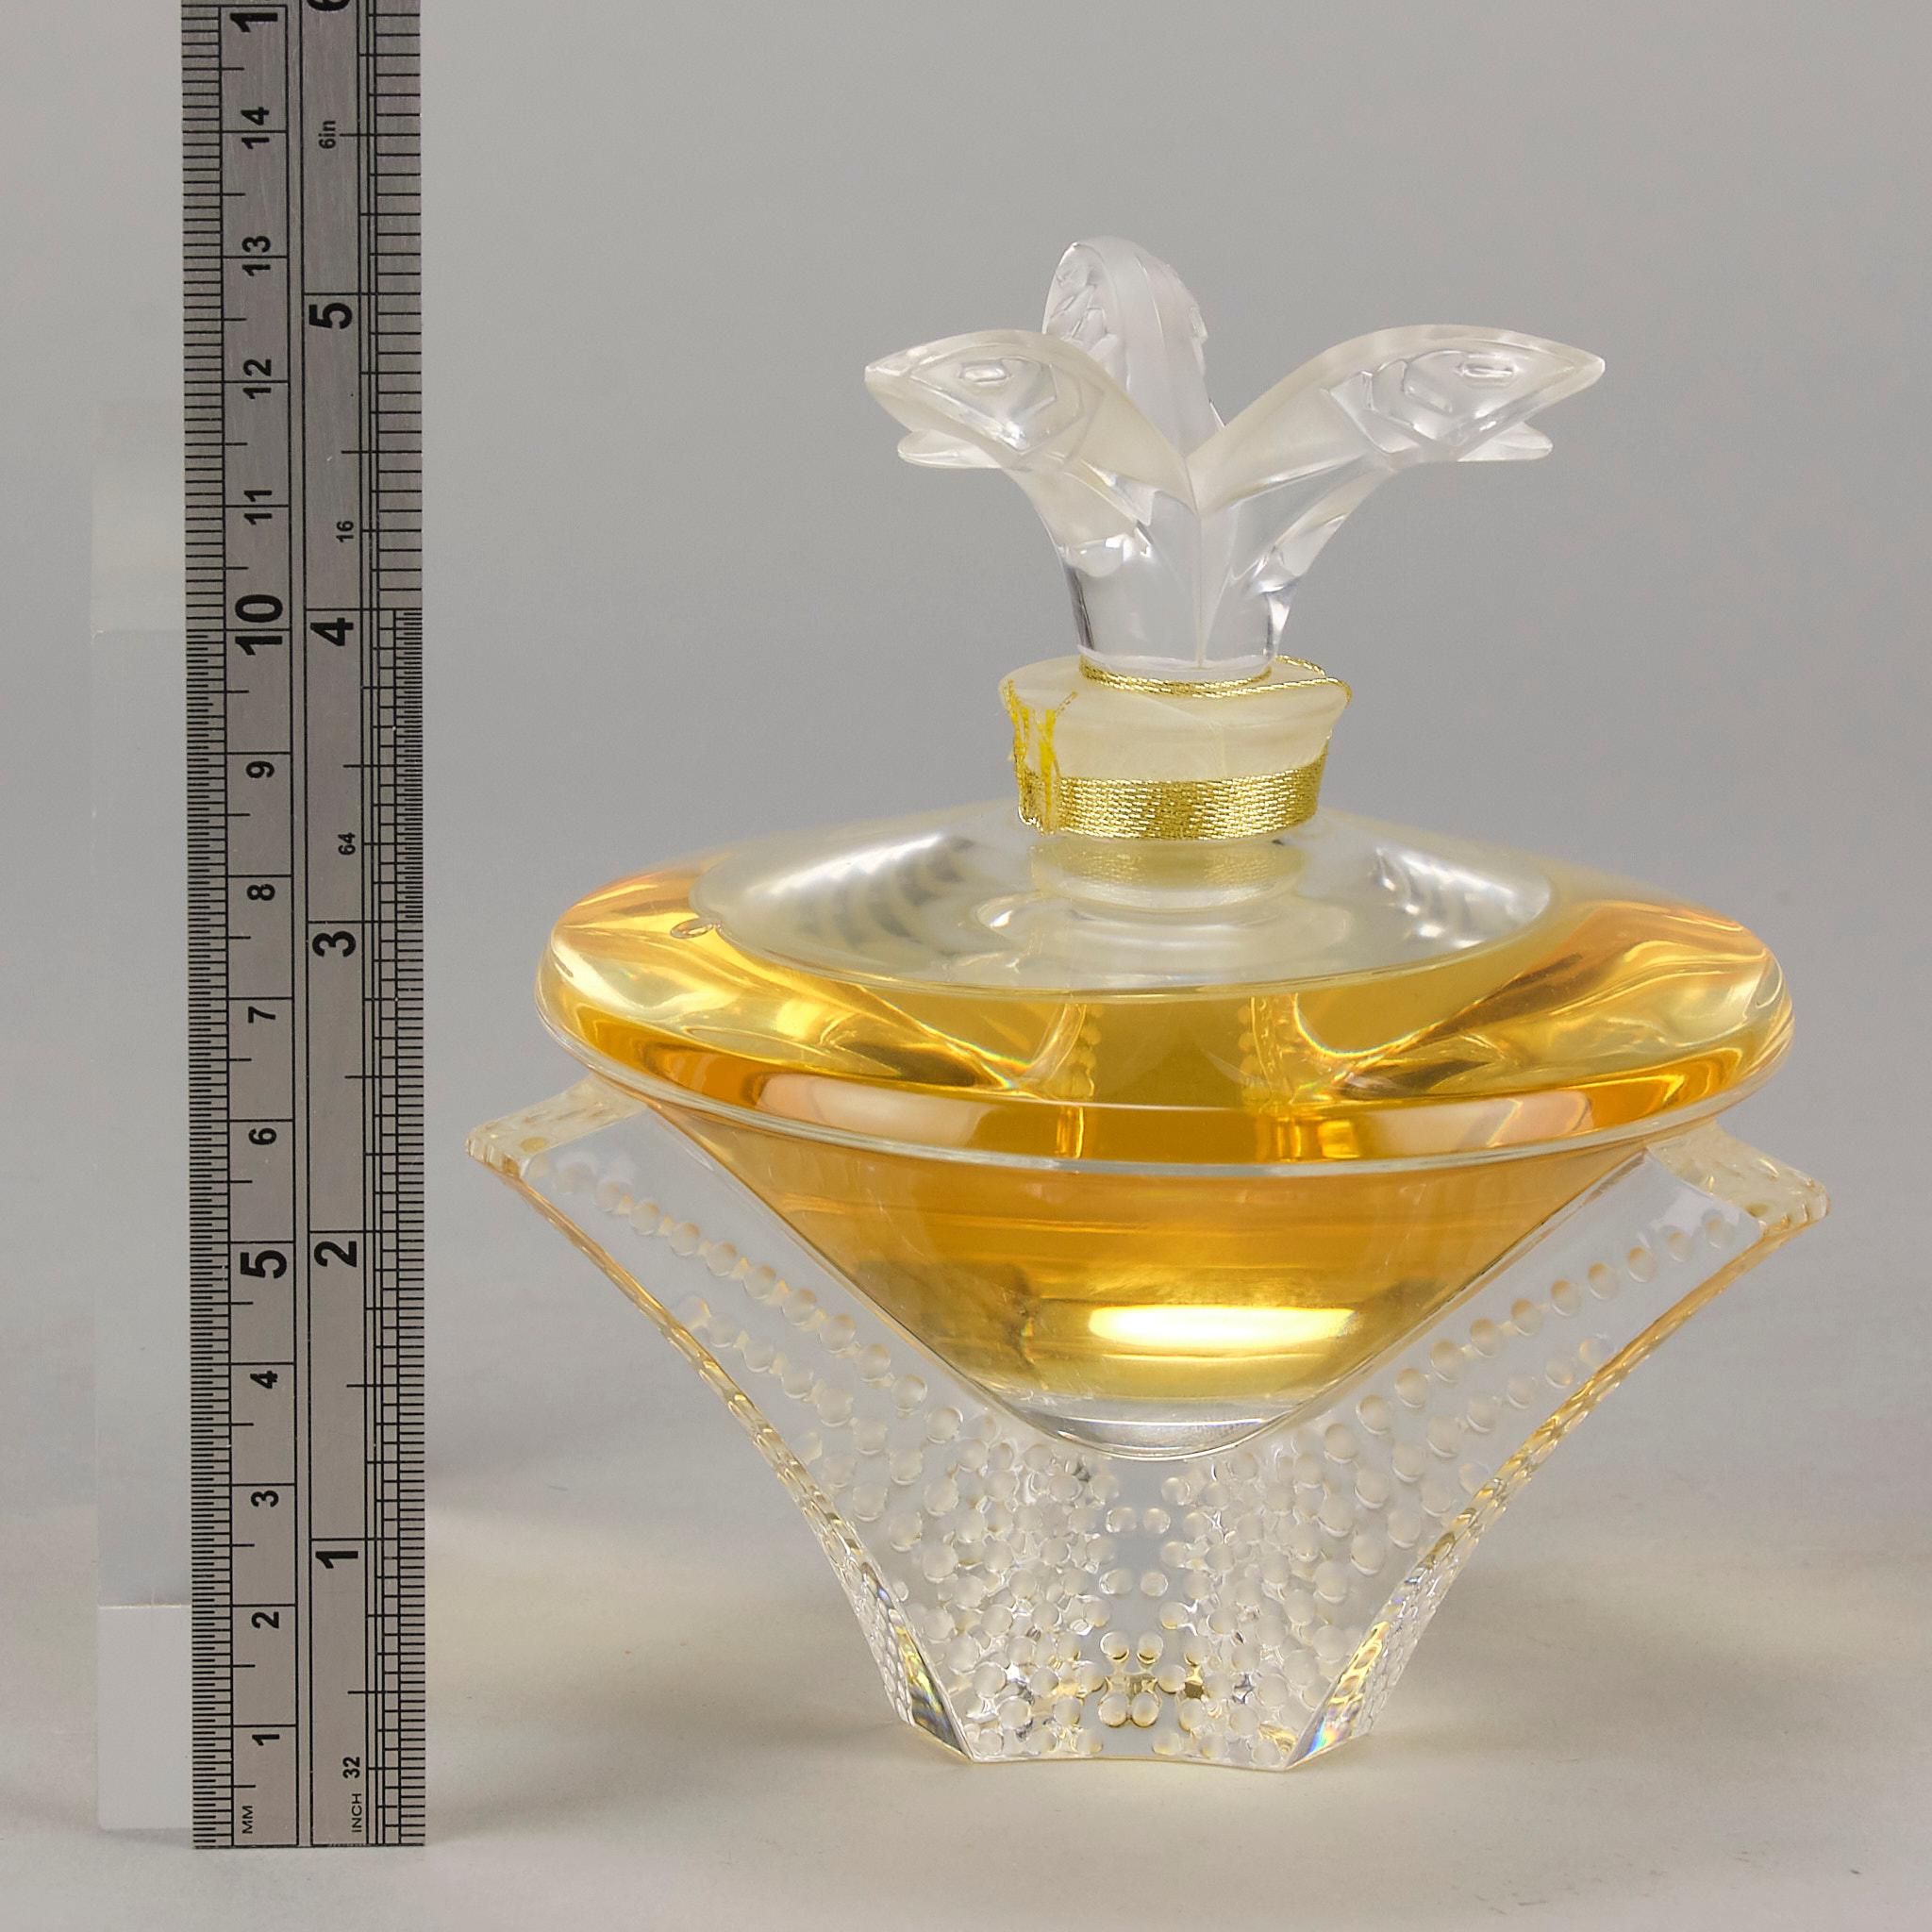 Contemporary Lalique Scent Bottle entitled 